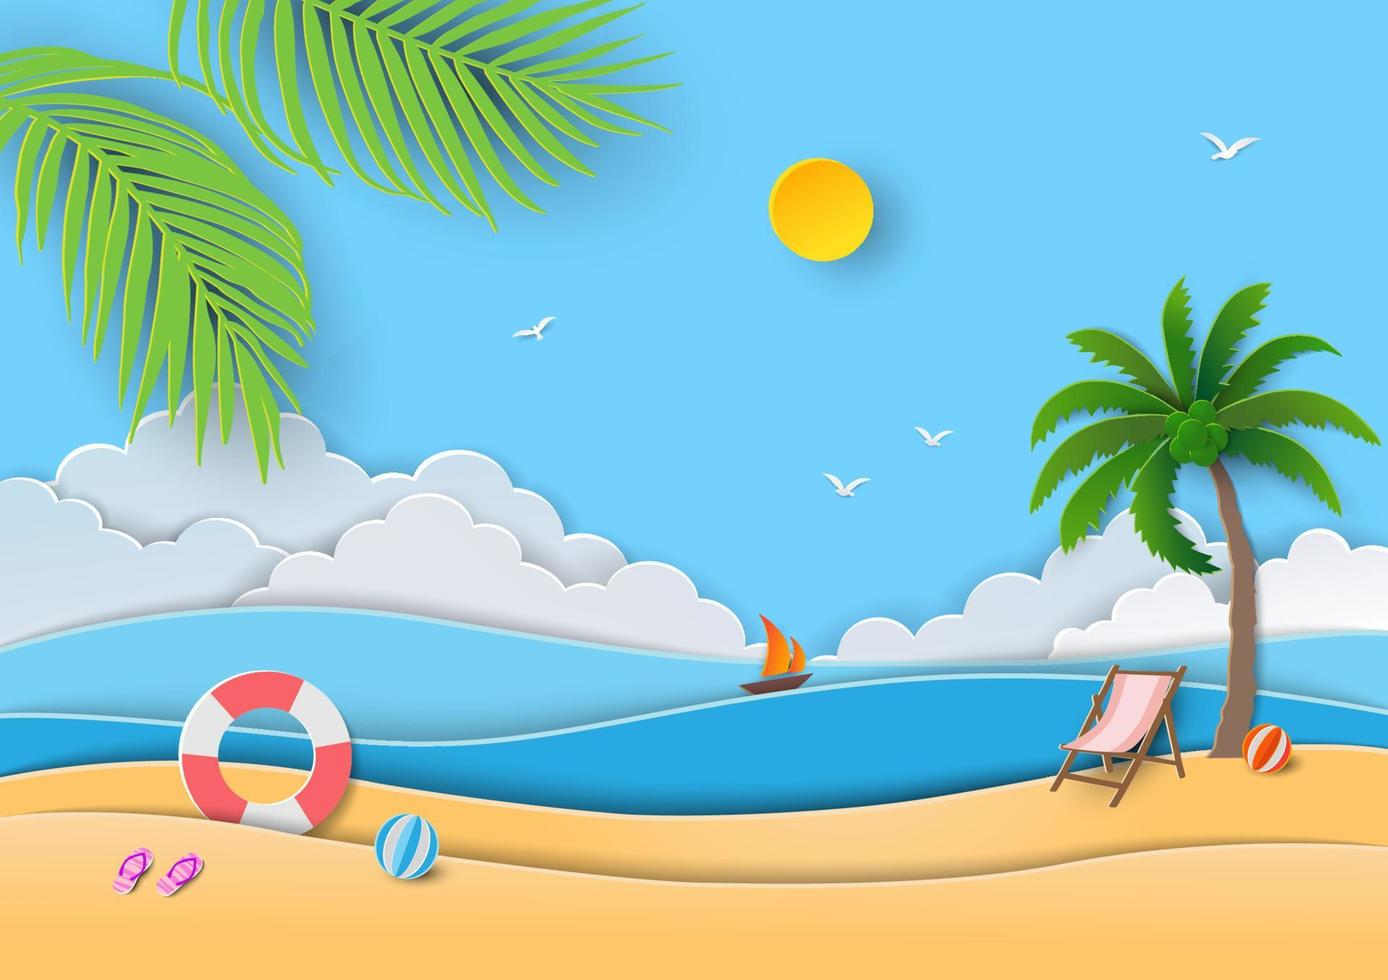 ballon coloré gonflable sur la plage de sable et la mer avec des feuilles  tropicales, paysage marin. vacances d'été et illustration de voyage.  vecteur 25464747 Art vectoriel chez Vecteezy